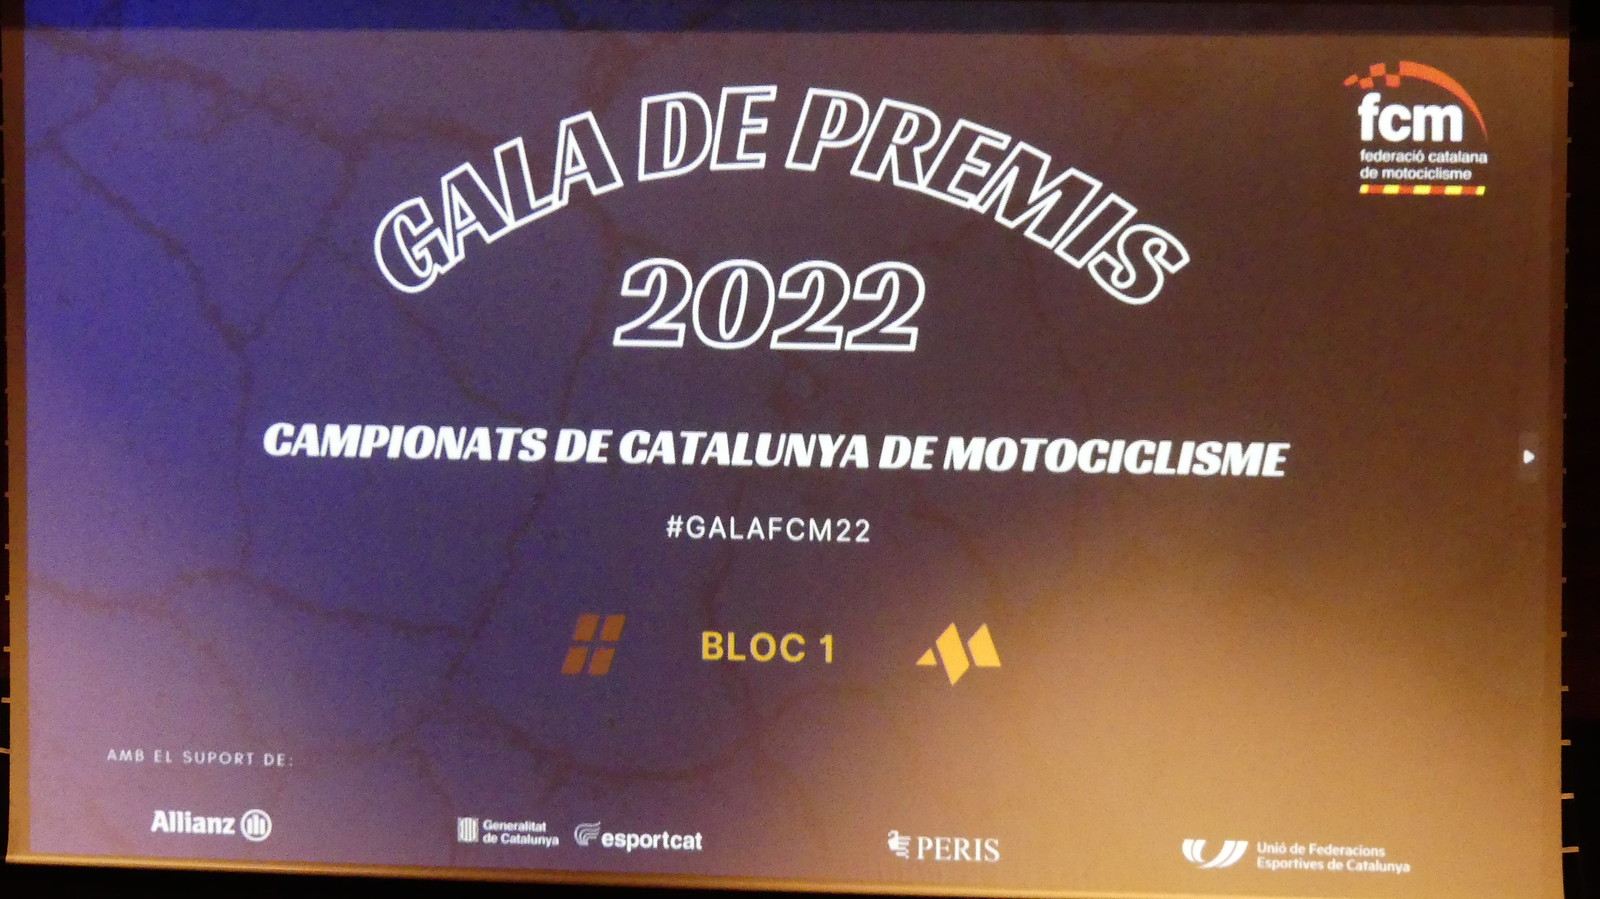 Més imatges Gala FCM 2022